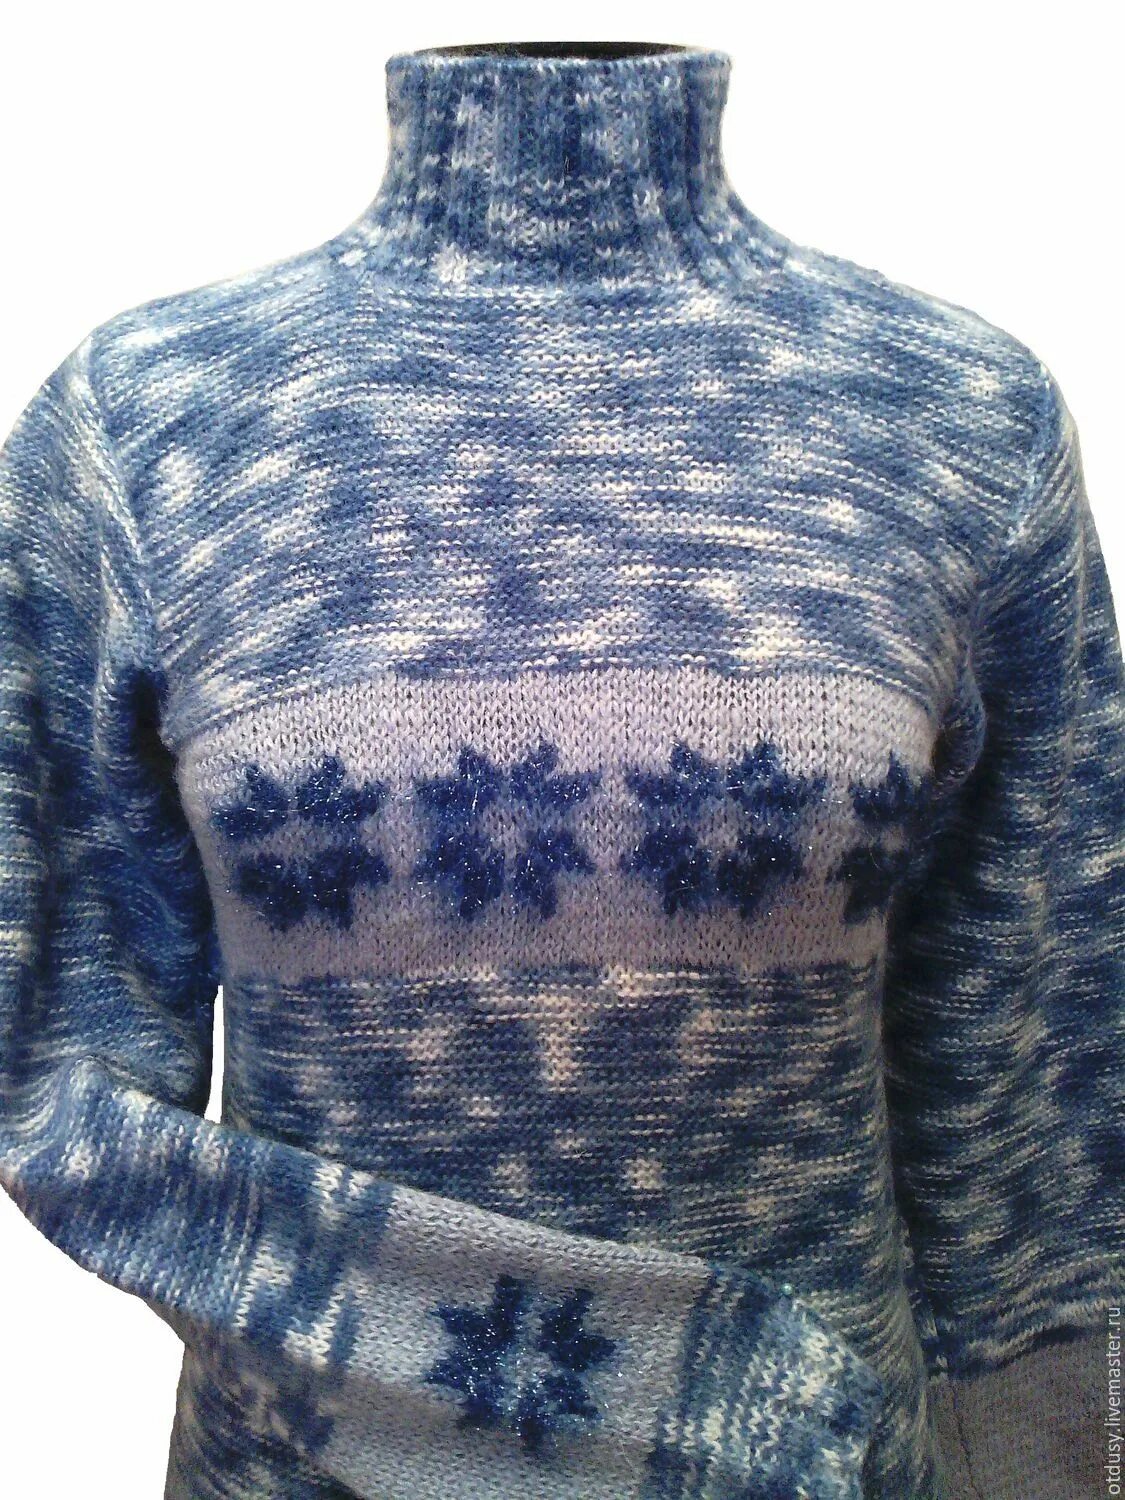 Советский свитер. Ретро свитер. Свитер со снежинками. Свитер ретро женский.